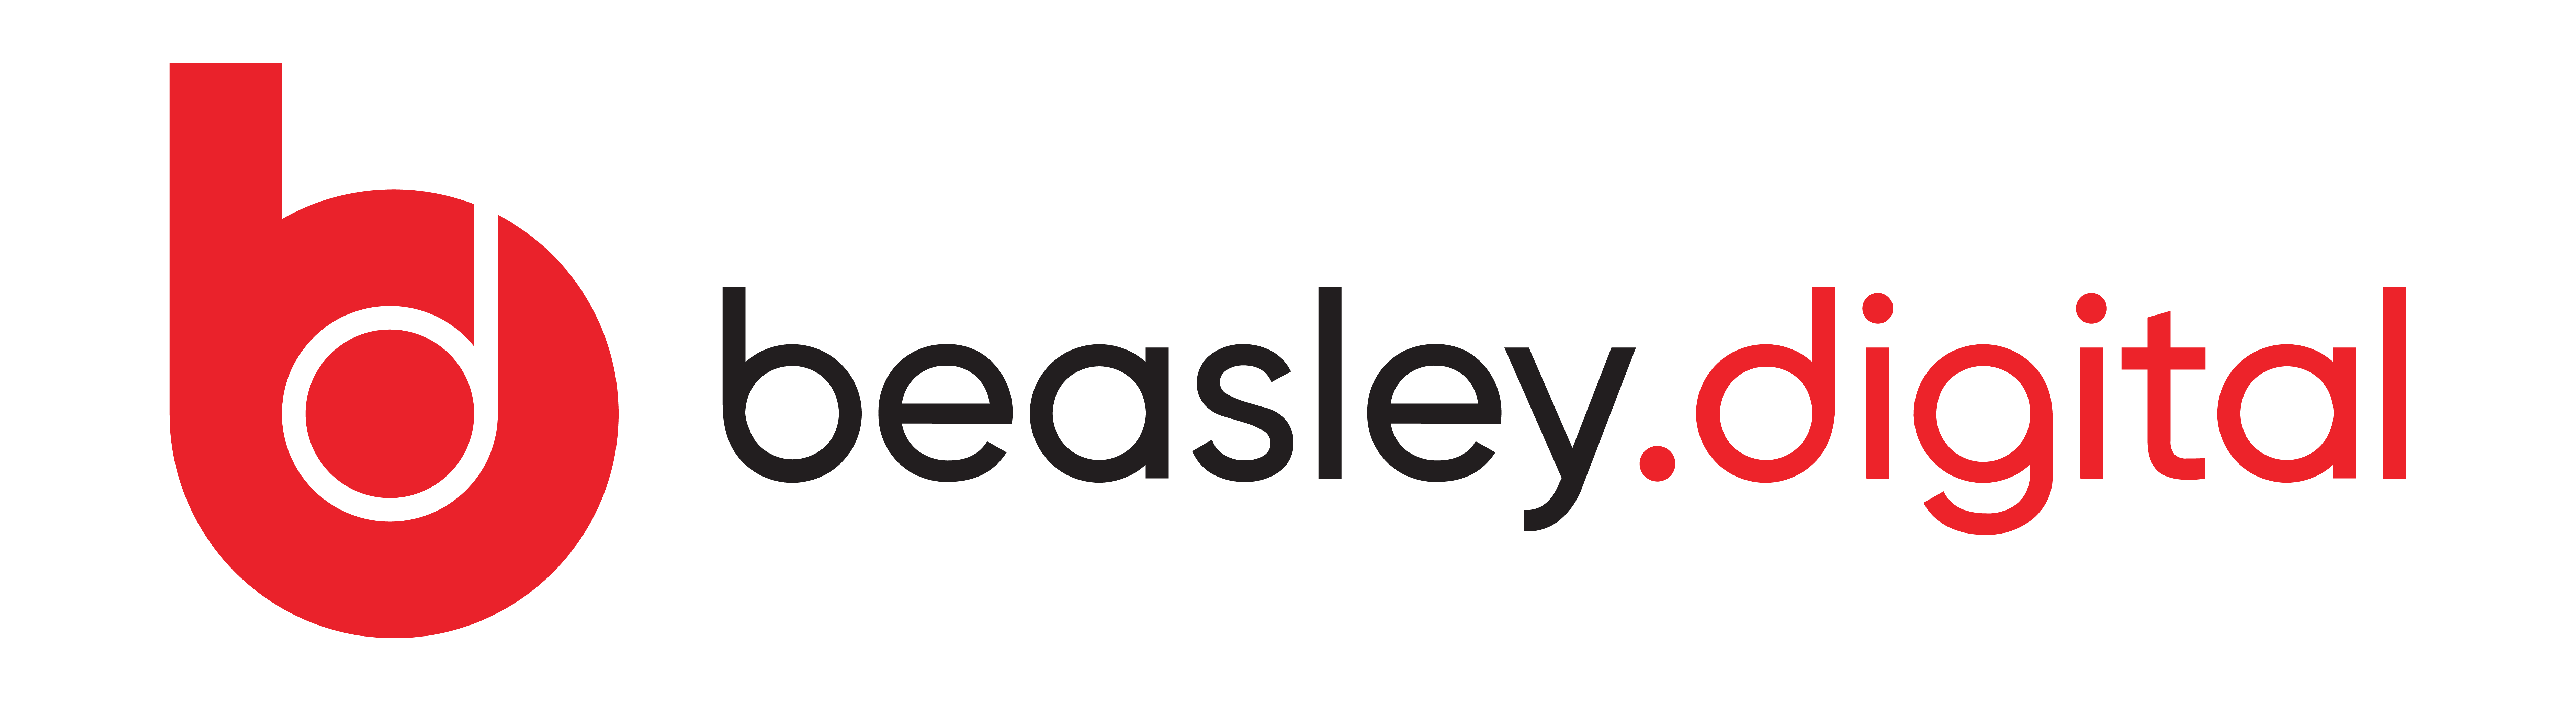 Beasley Digital_Logo